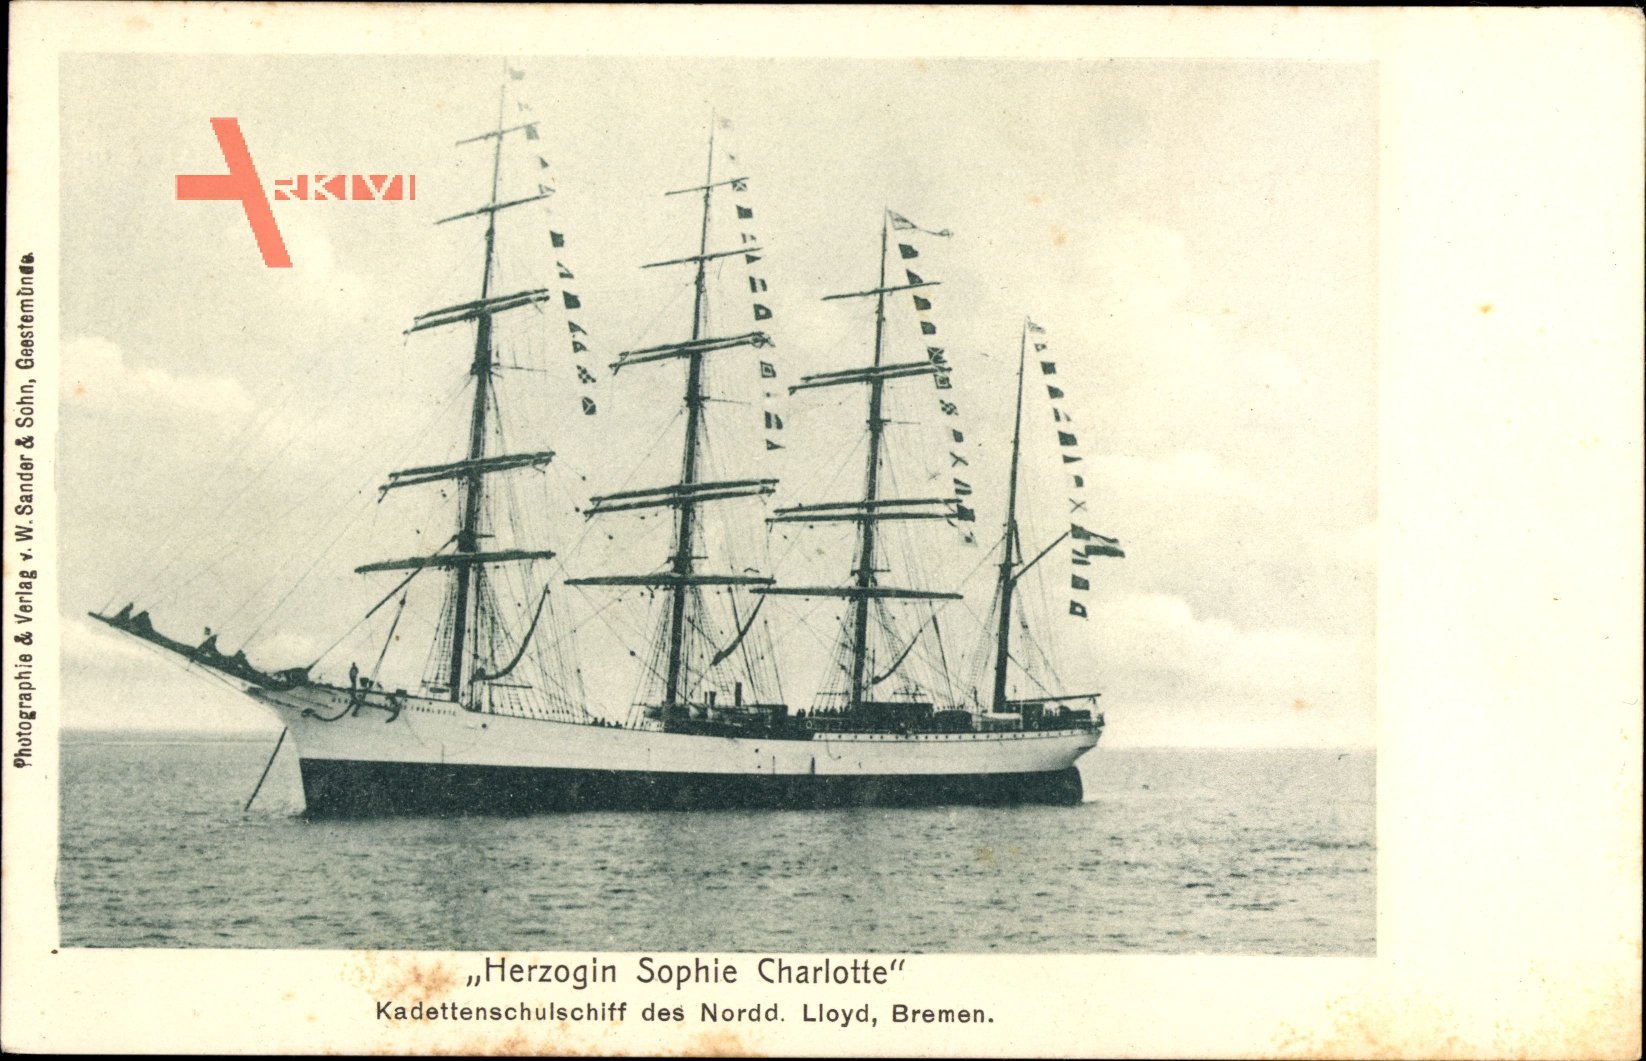 Segelschiff, Herzogin Sophie Charlotte, Viermastbark, Kadettenschulschiff